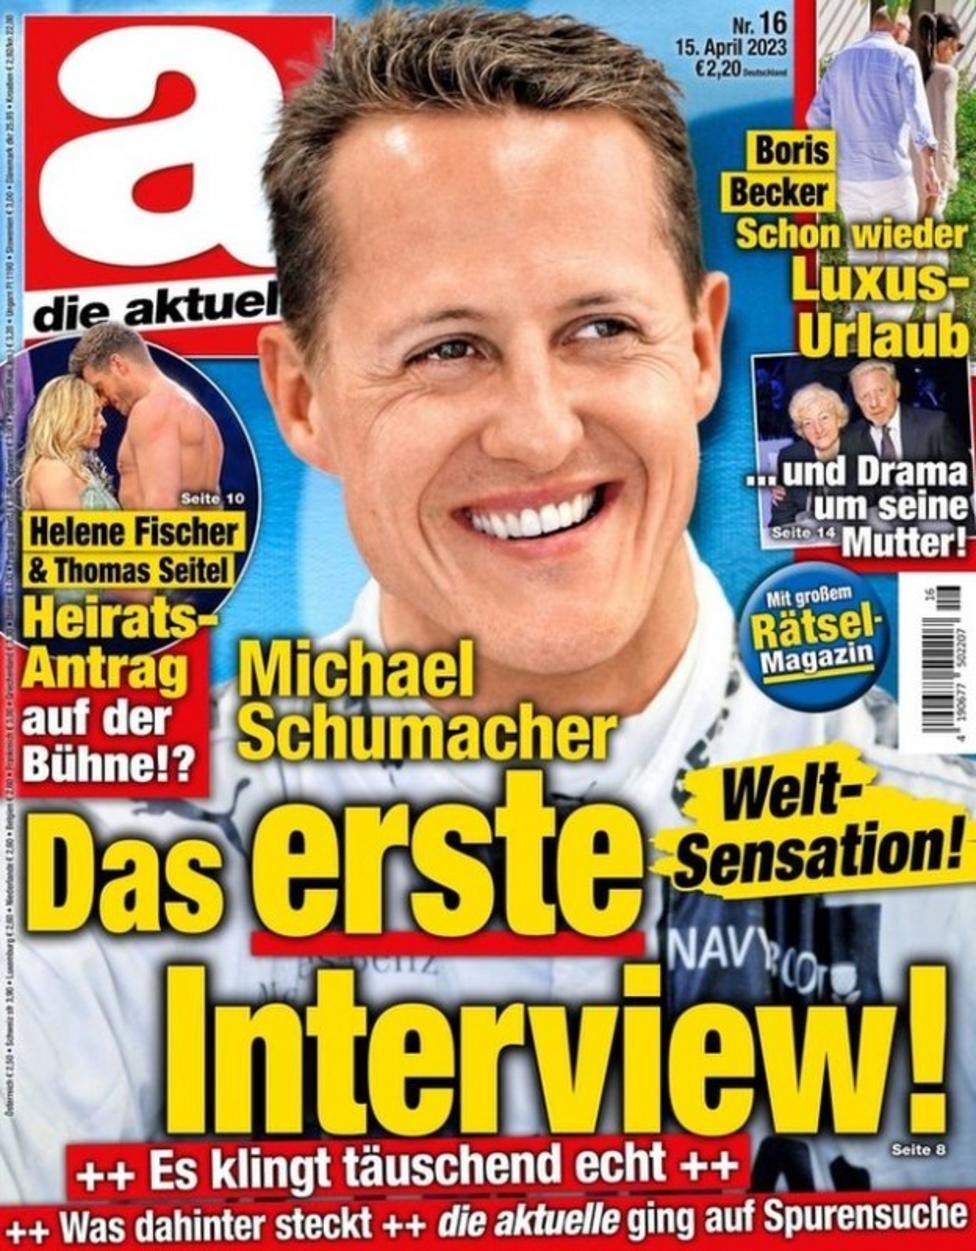 Titulní stránka časopisu Die Aktuelle s falešným rozvorem s Michaelem Schumacherem